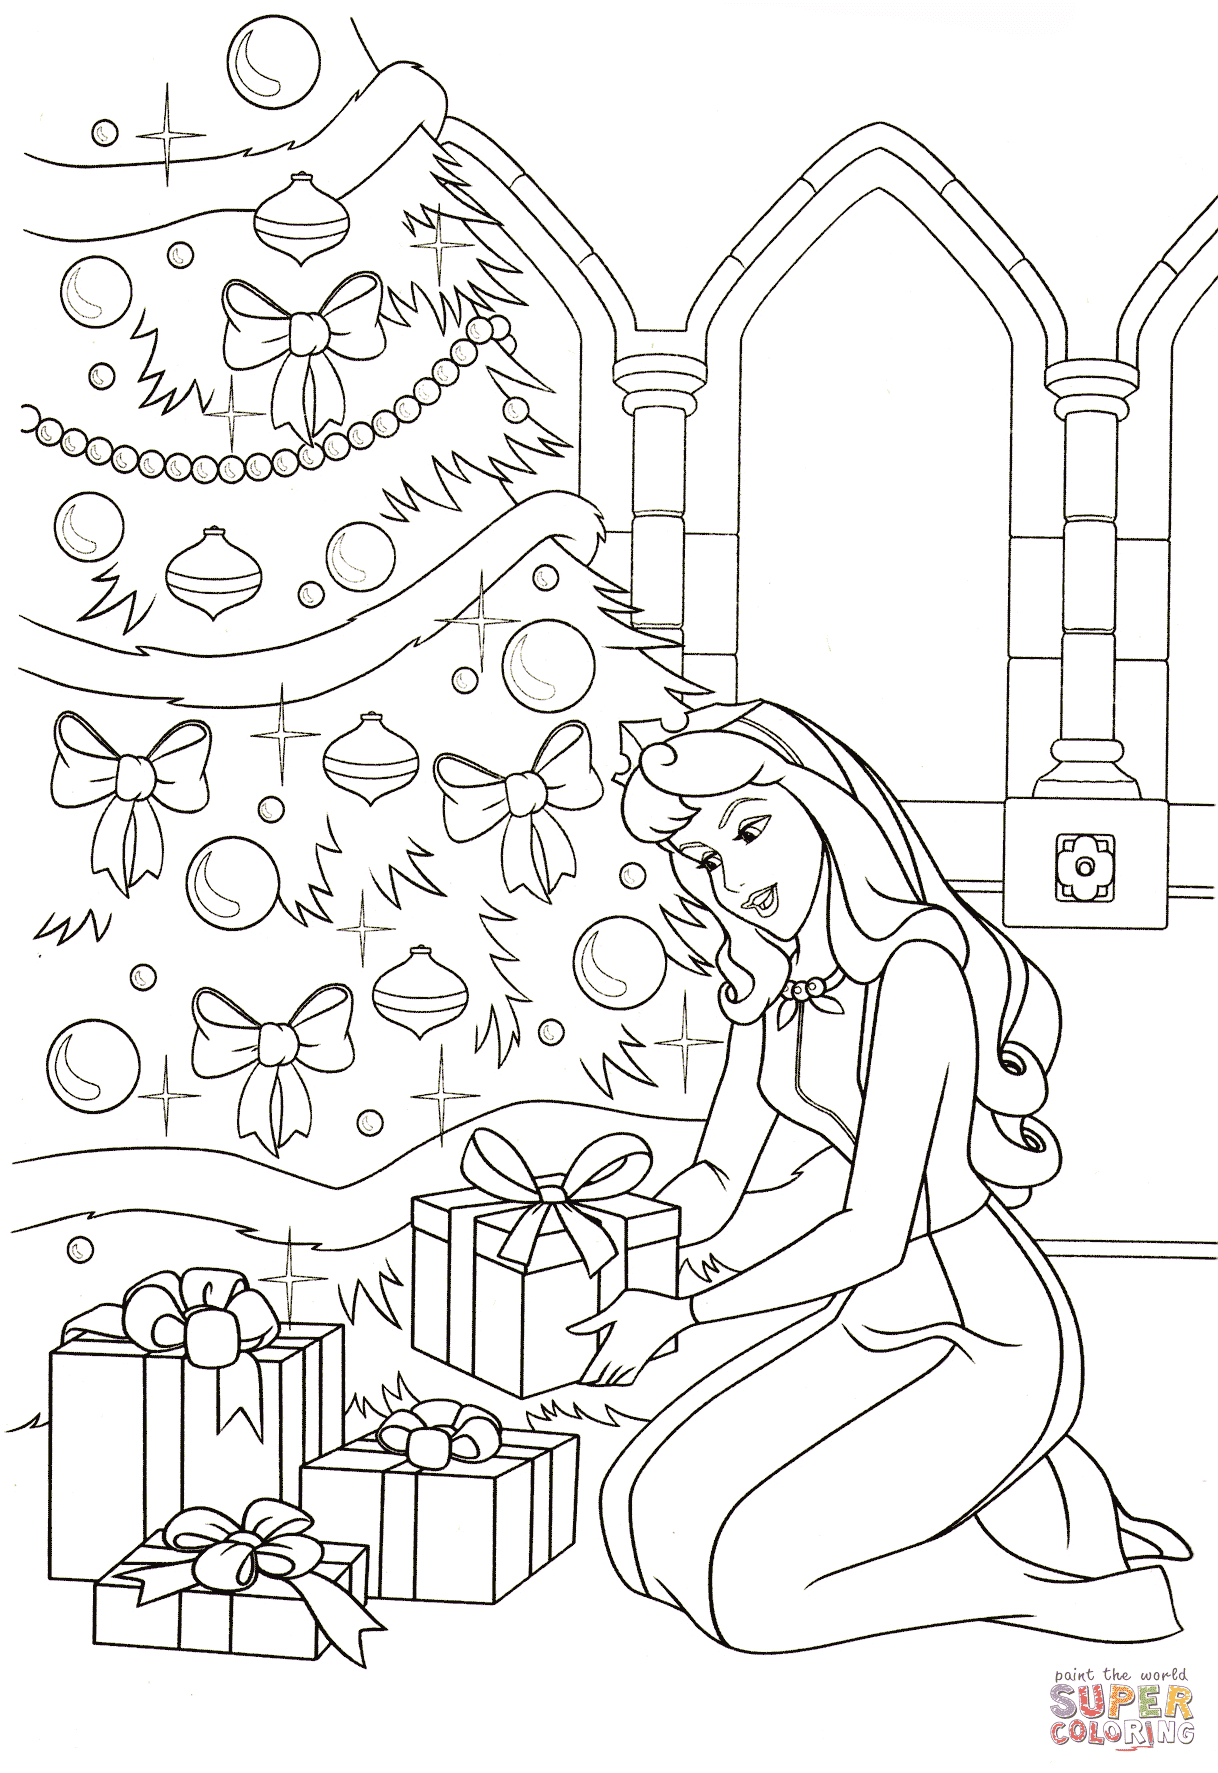 أورورا تضع كل الهدايا من الجميلة النائمة تحت الشجرة